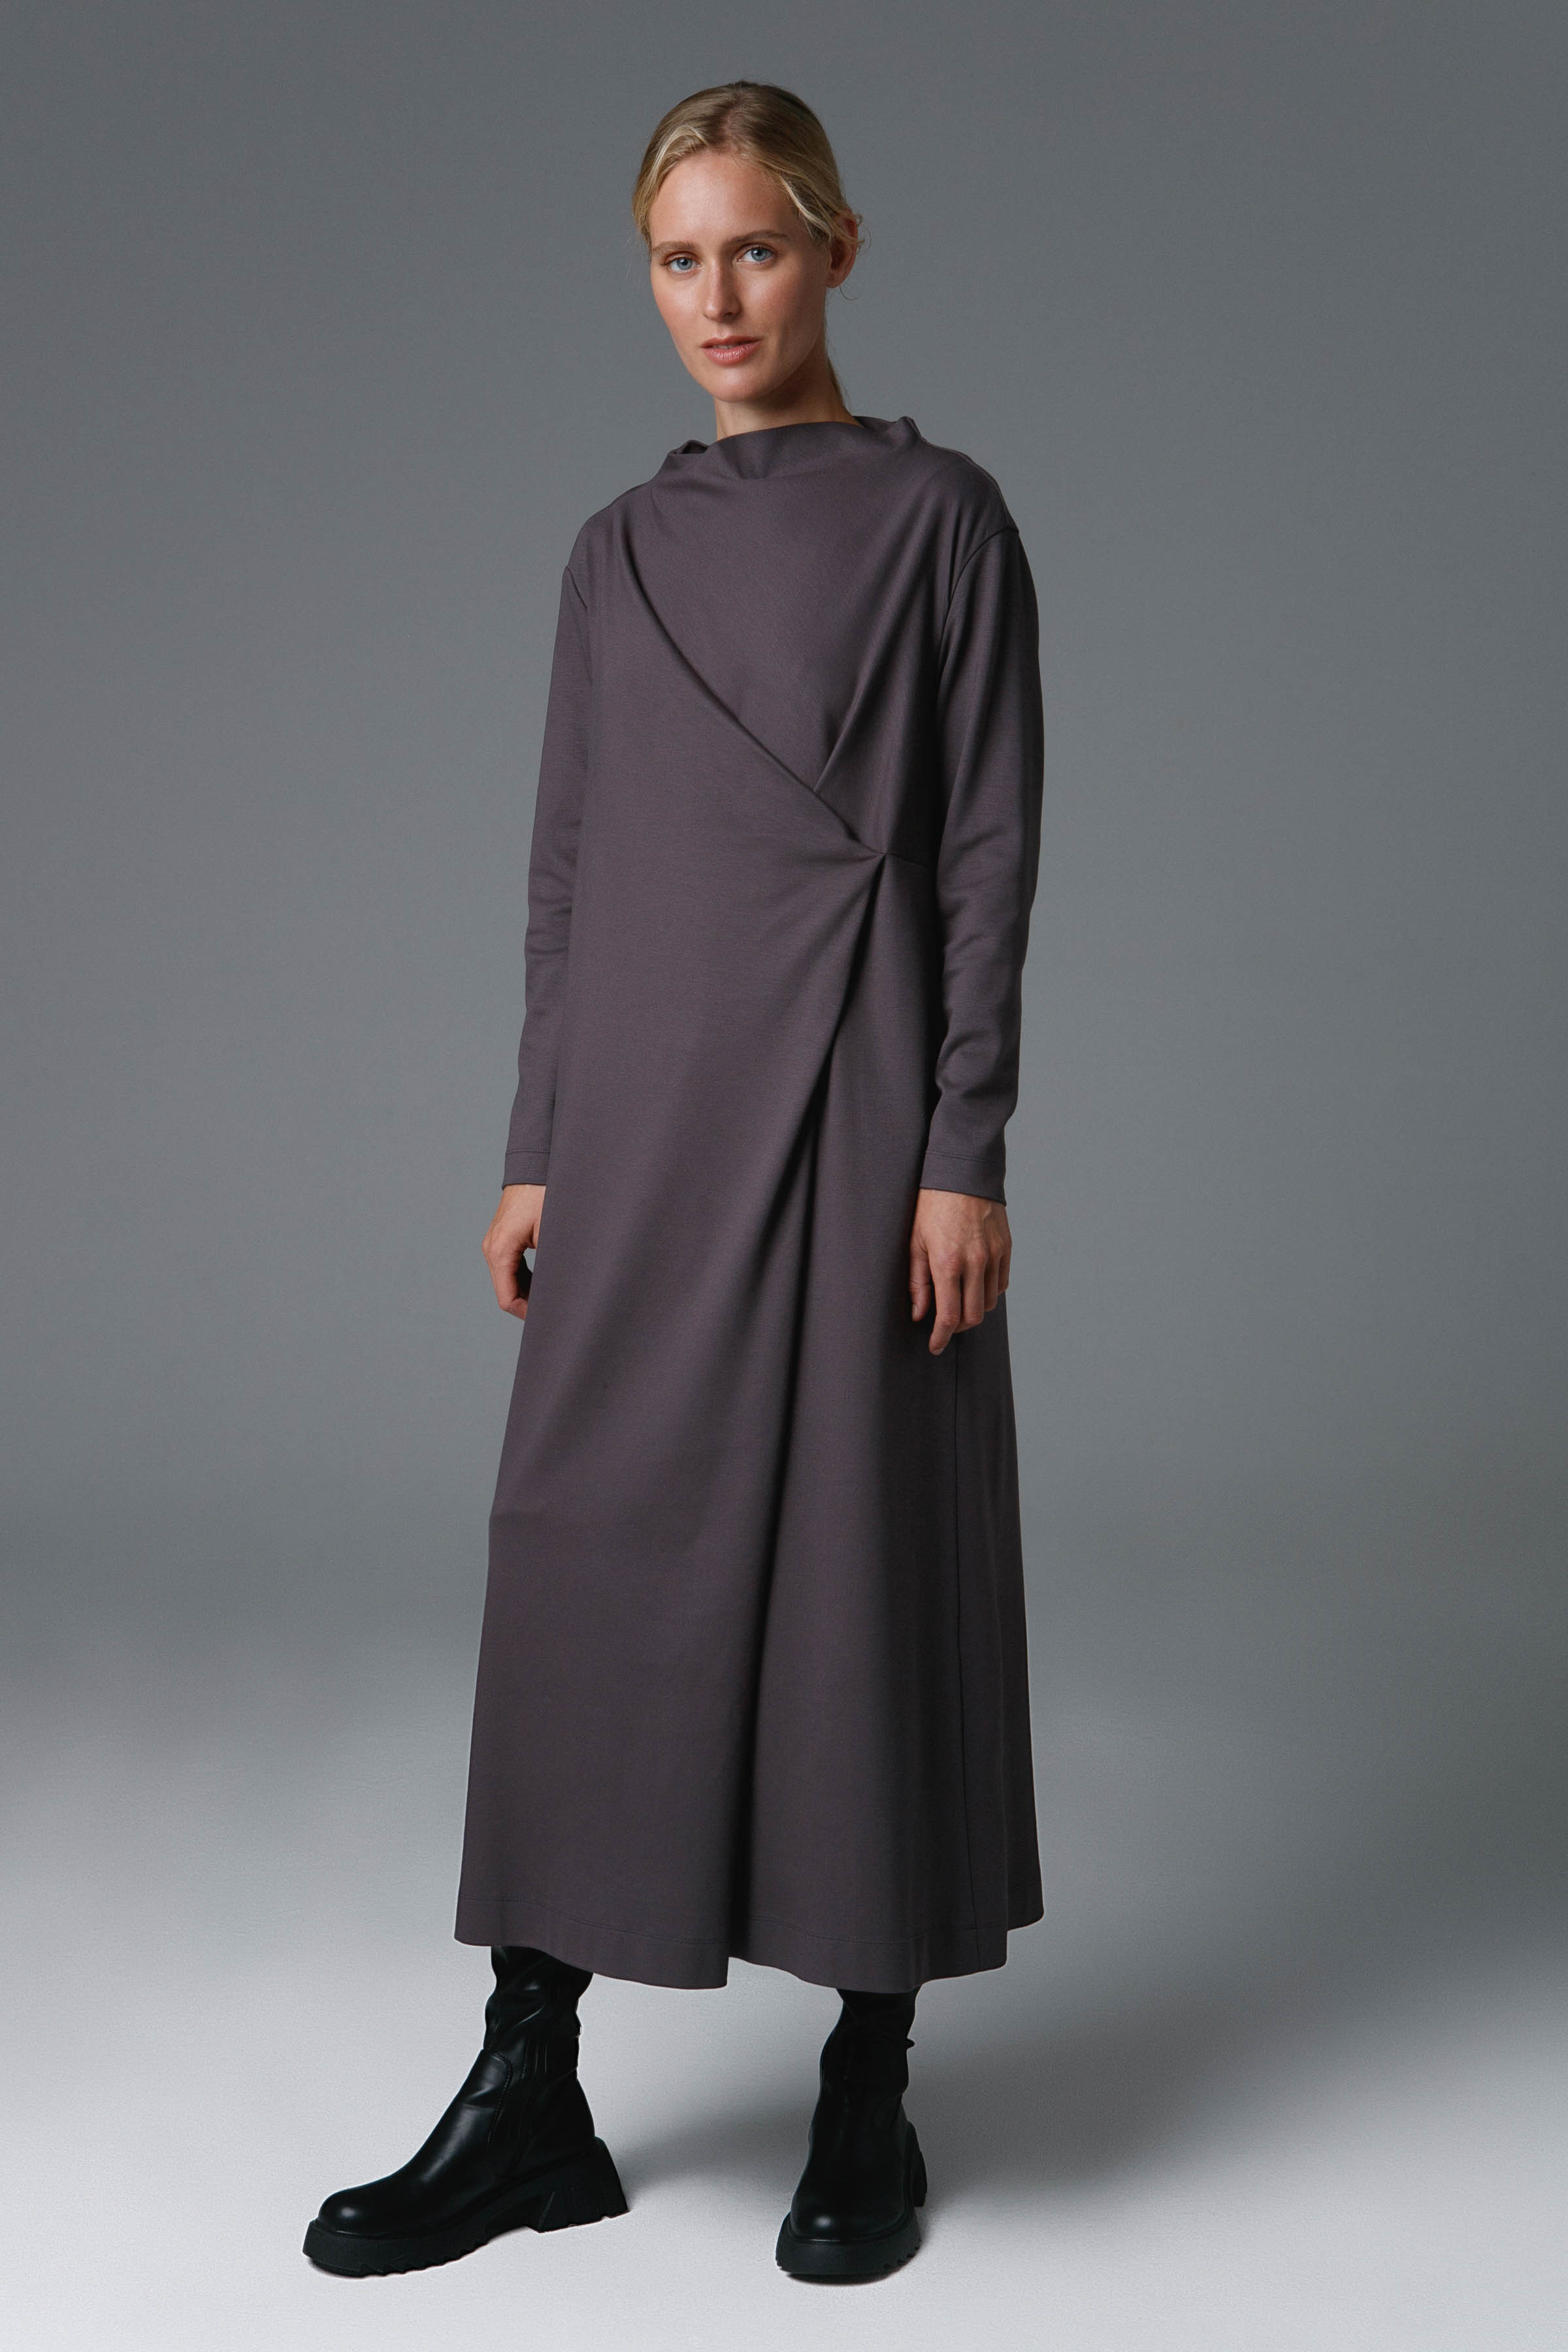 Платье драпировка, джерси 10 Серый (grise) от Lesel (Лесель)! Заказывайте по ✆ 8 (800) 777 02 37